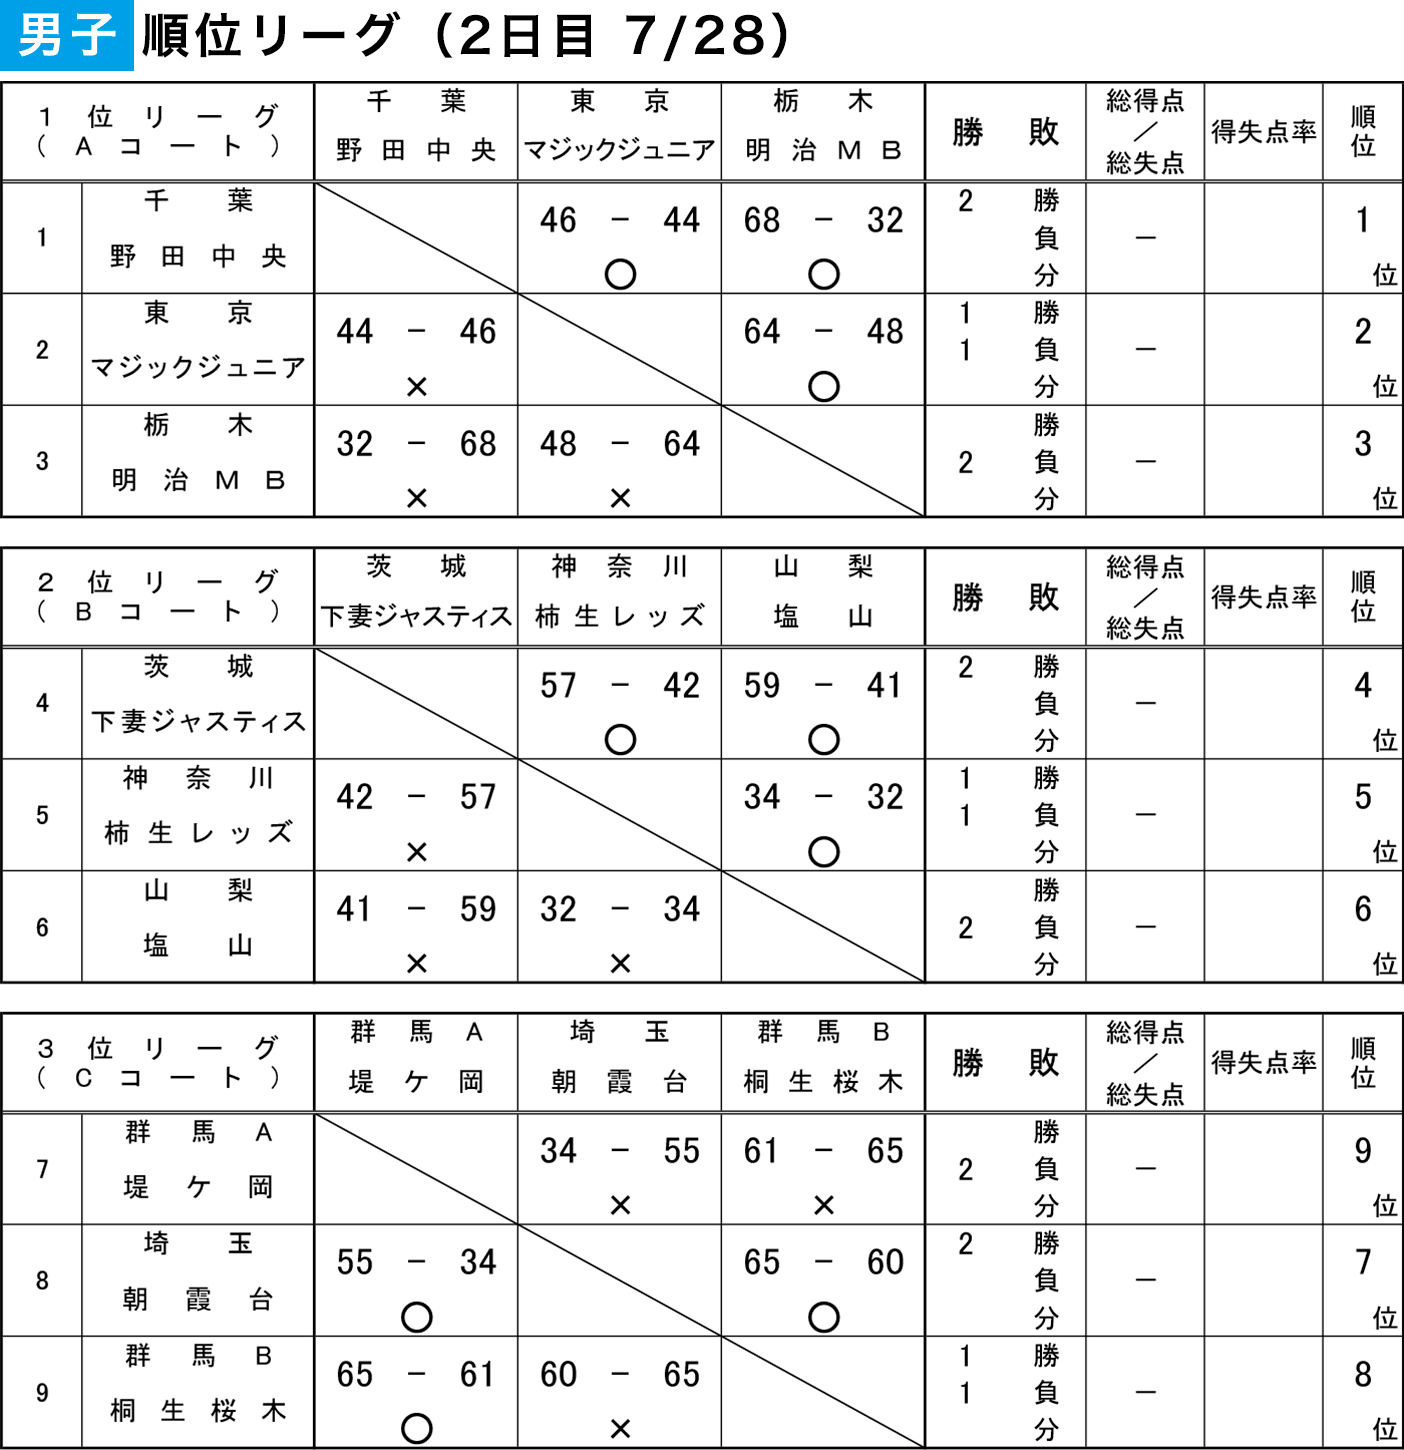 第38回 関東ブロック スポーツ少年団 競技別交流大会 2019 in 群馬 - 2日目 男子 順位リーグ 結果